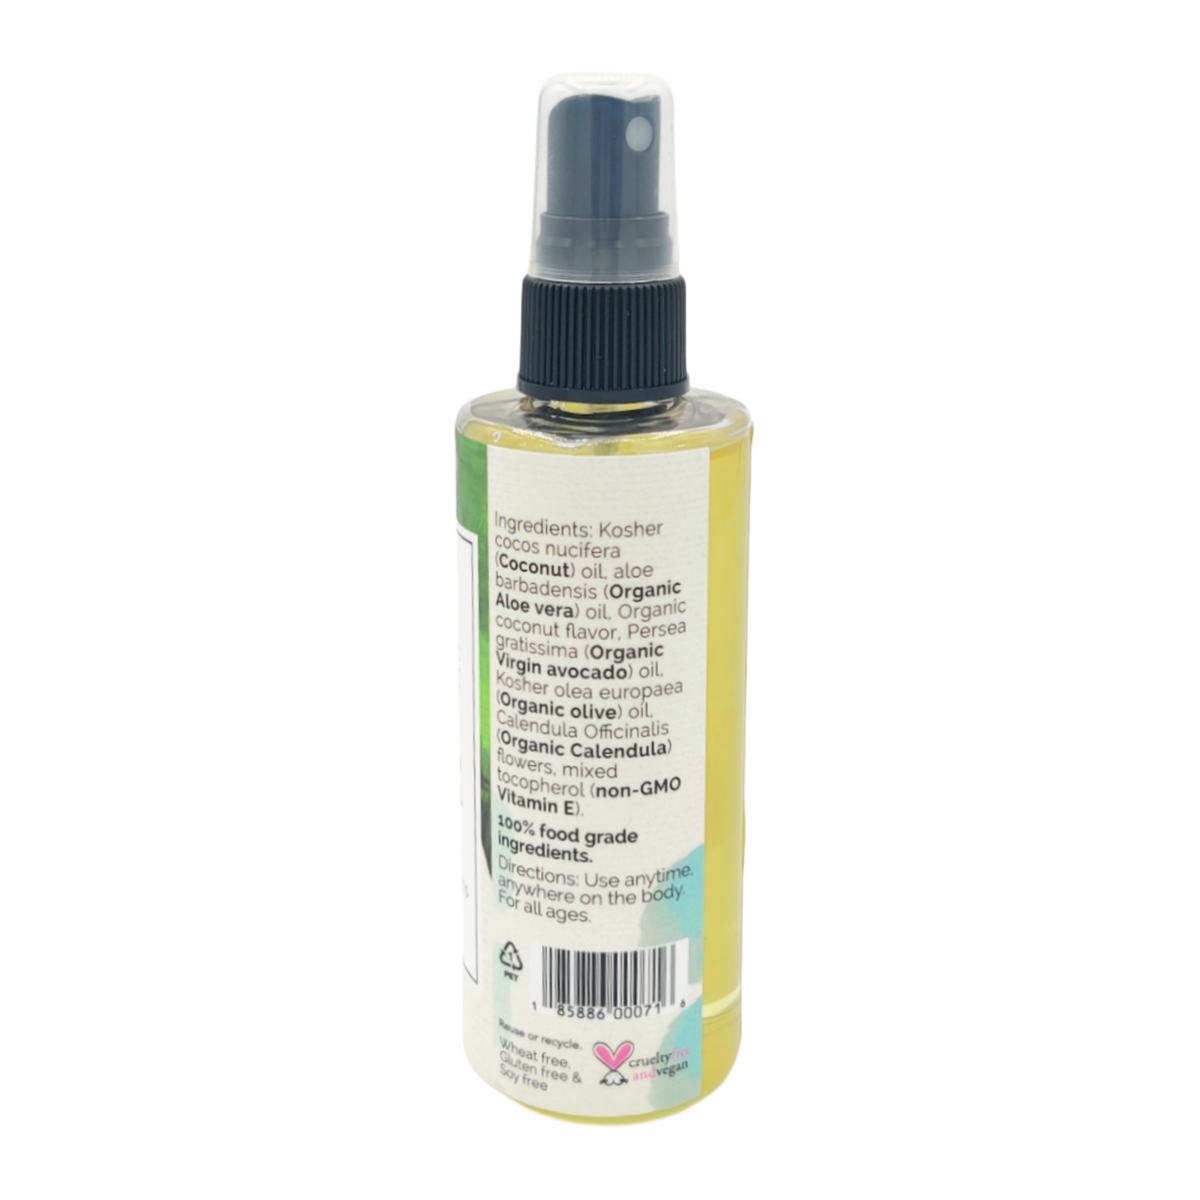 BodyLove Massage Oil (100% food grade flavored body oils)